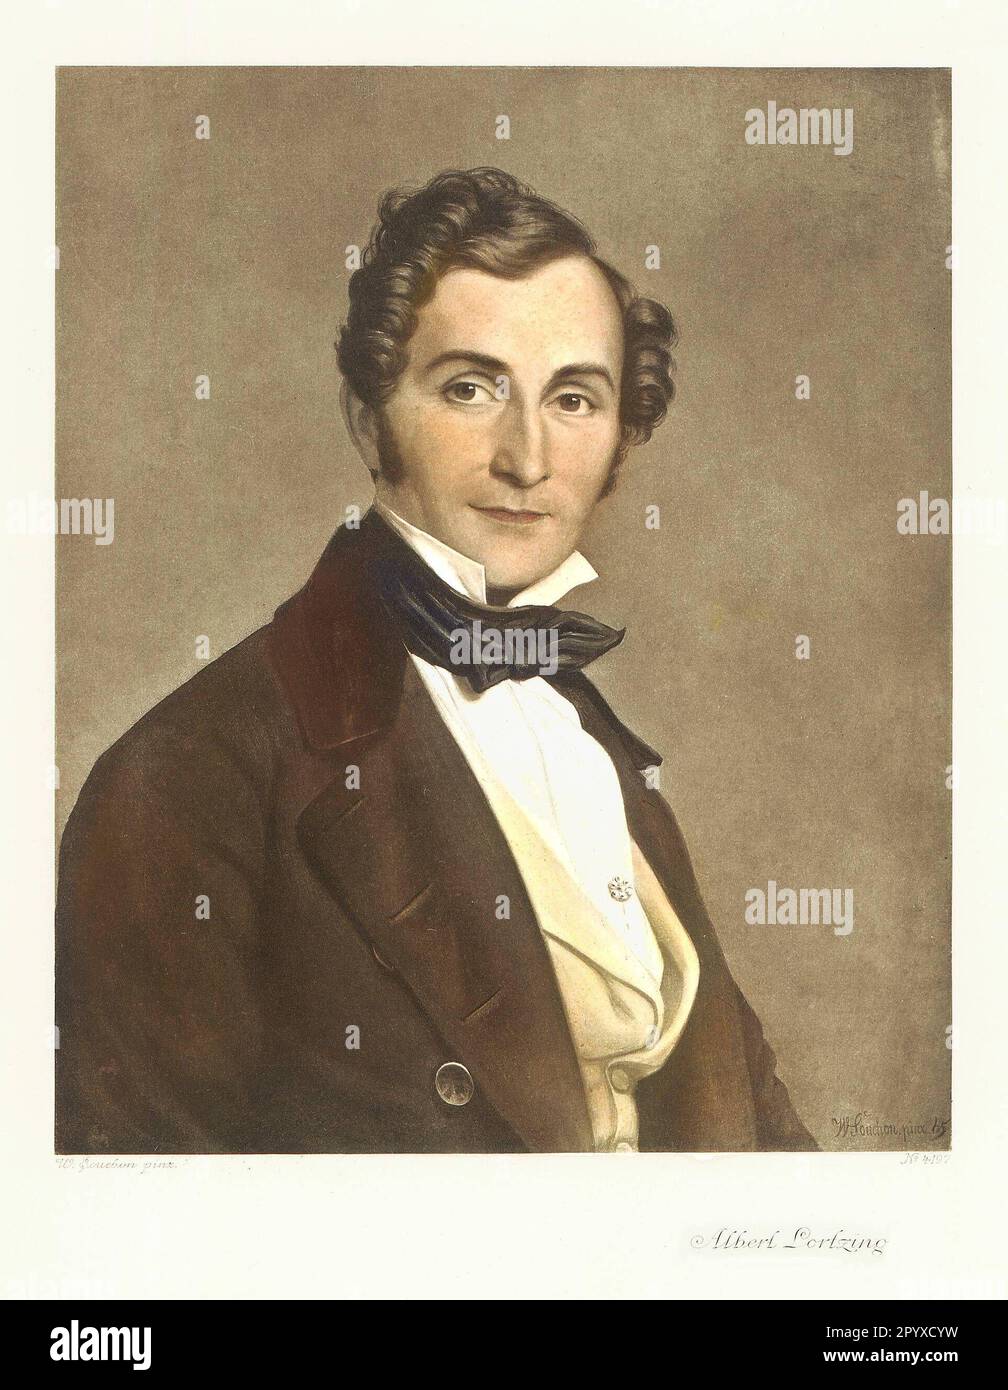 Albert Lortzing (1801-1851), deutscher Komponist. Gemälde von W. Souchon. Foto: Heliogravure, Corpus Imaginum, Hanfstaengl Collection. [Maschinelle Übersetzung] Stockfoto